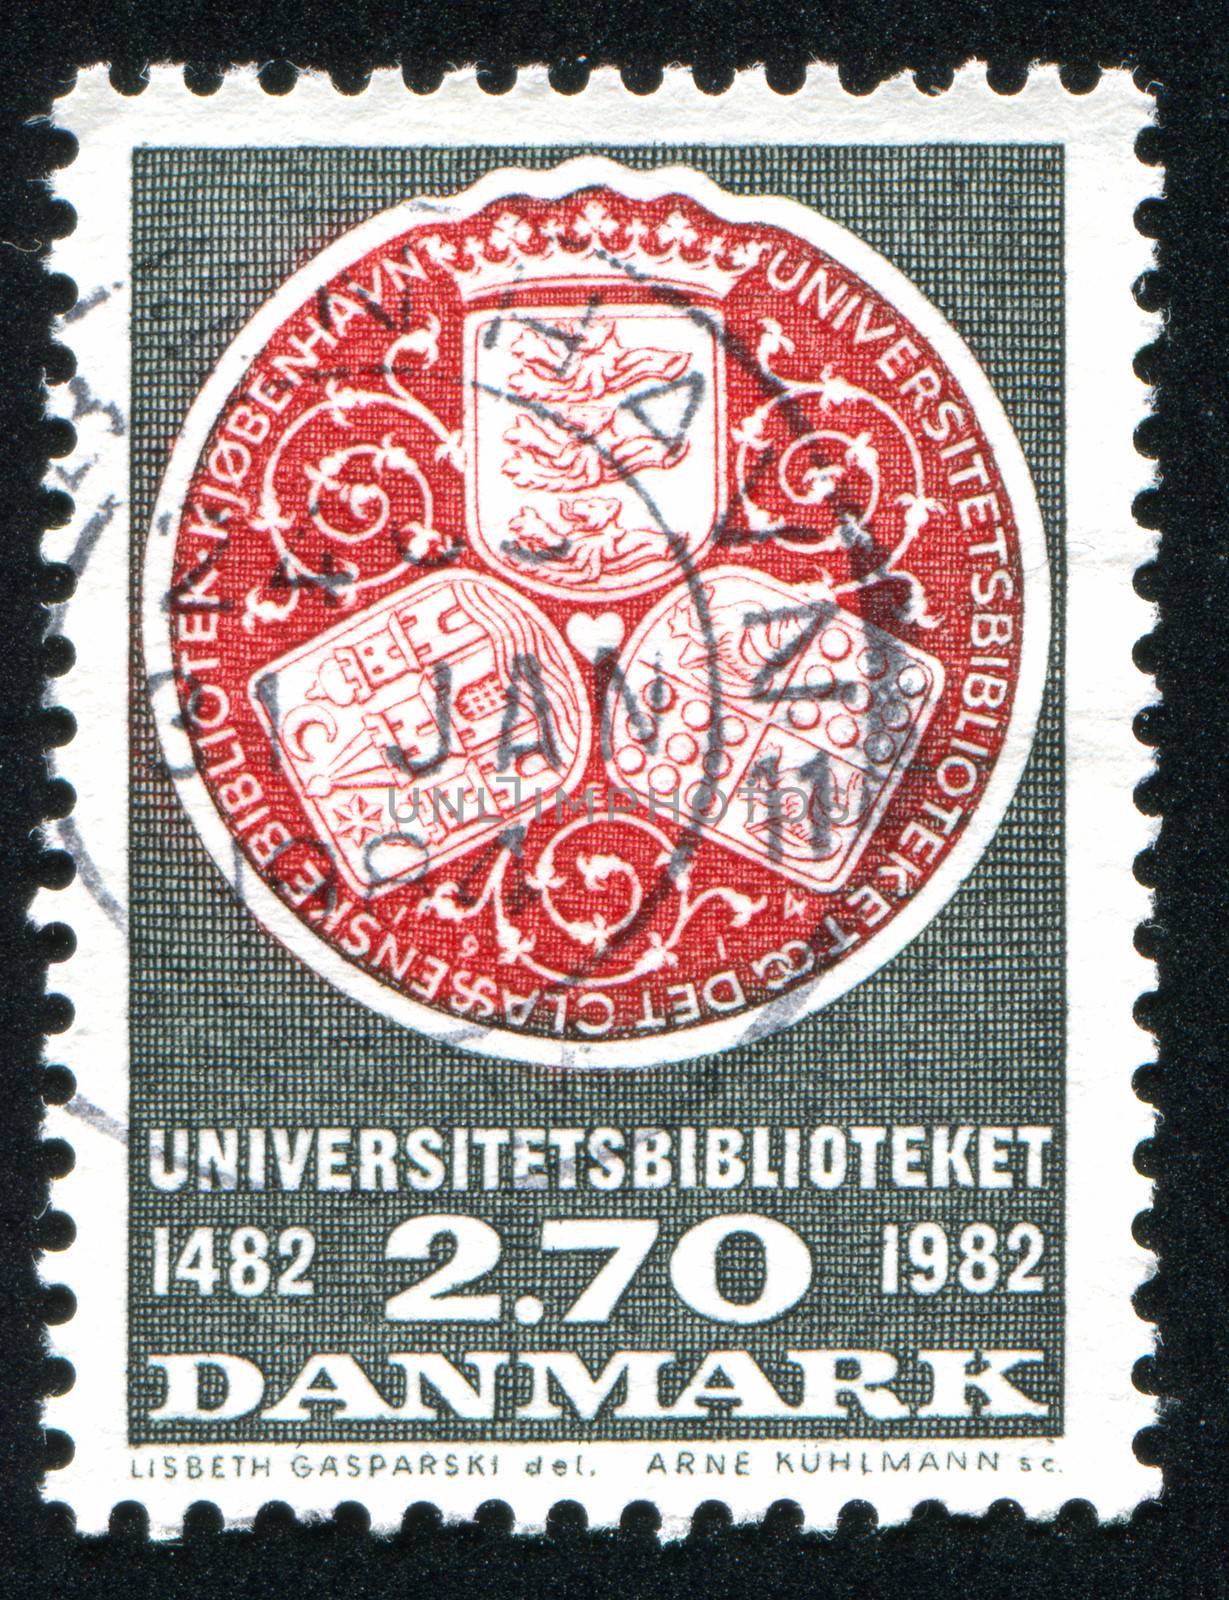 DENMARK - CIRCA 1982: stamp printed by Denmark, shows University Library seal, circa 1982